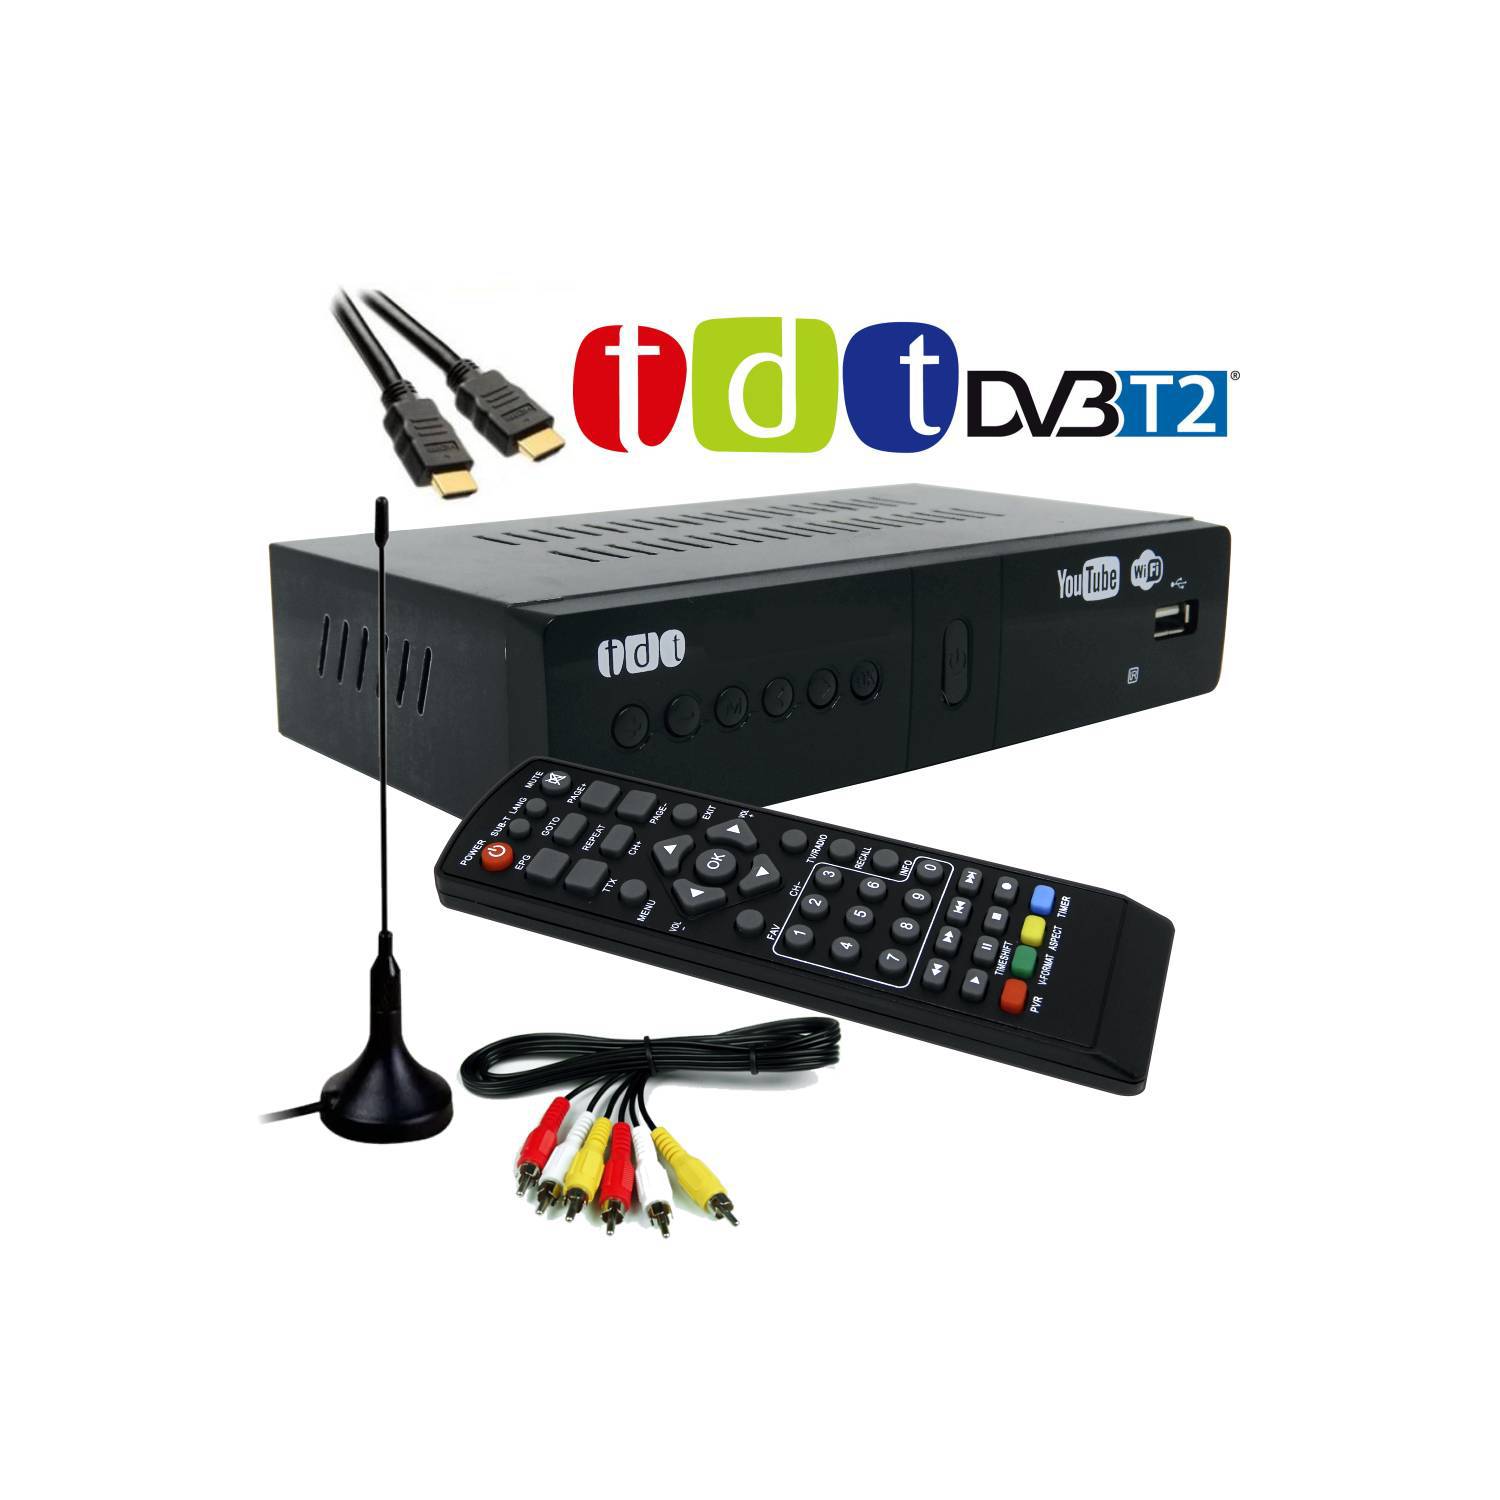 Decodificador Tdt Con Wifi Receptor Tv Digital T2 Antena